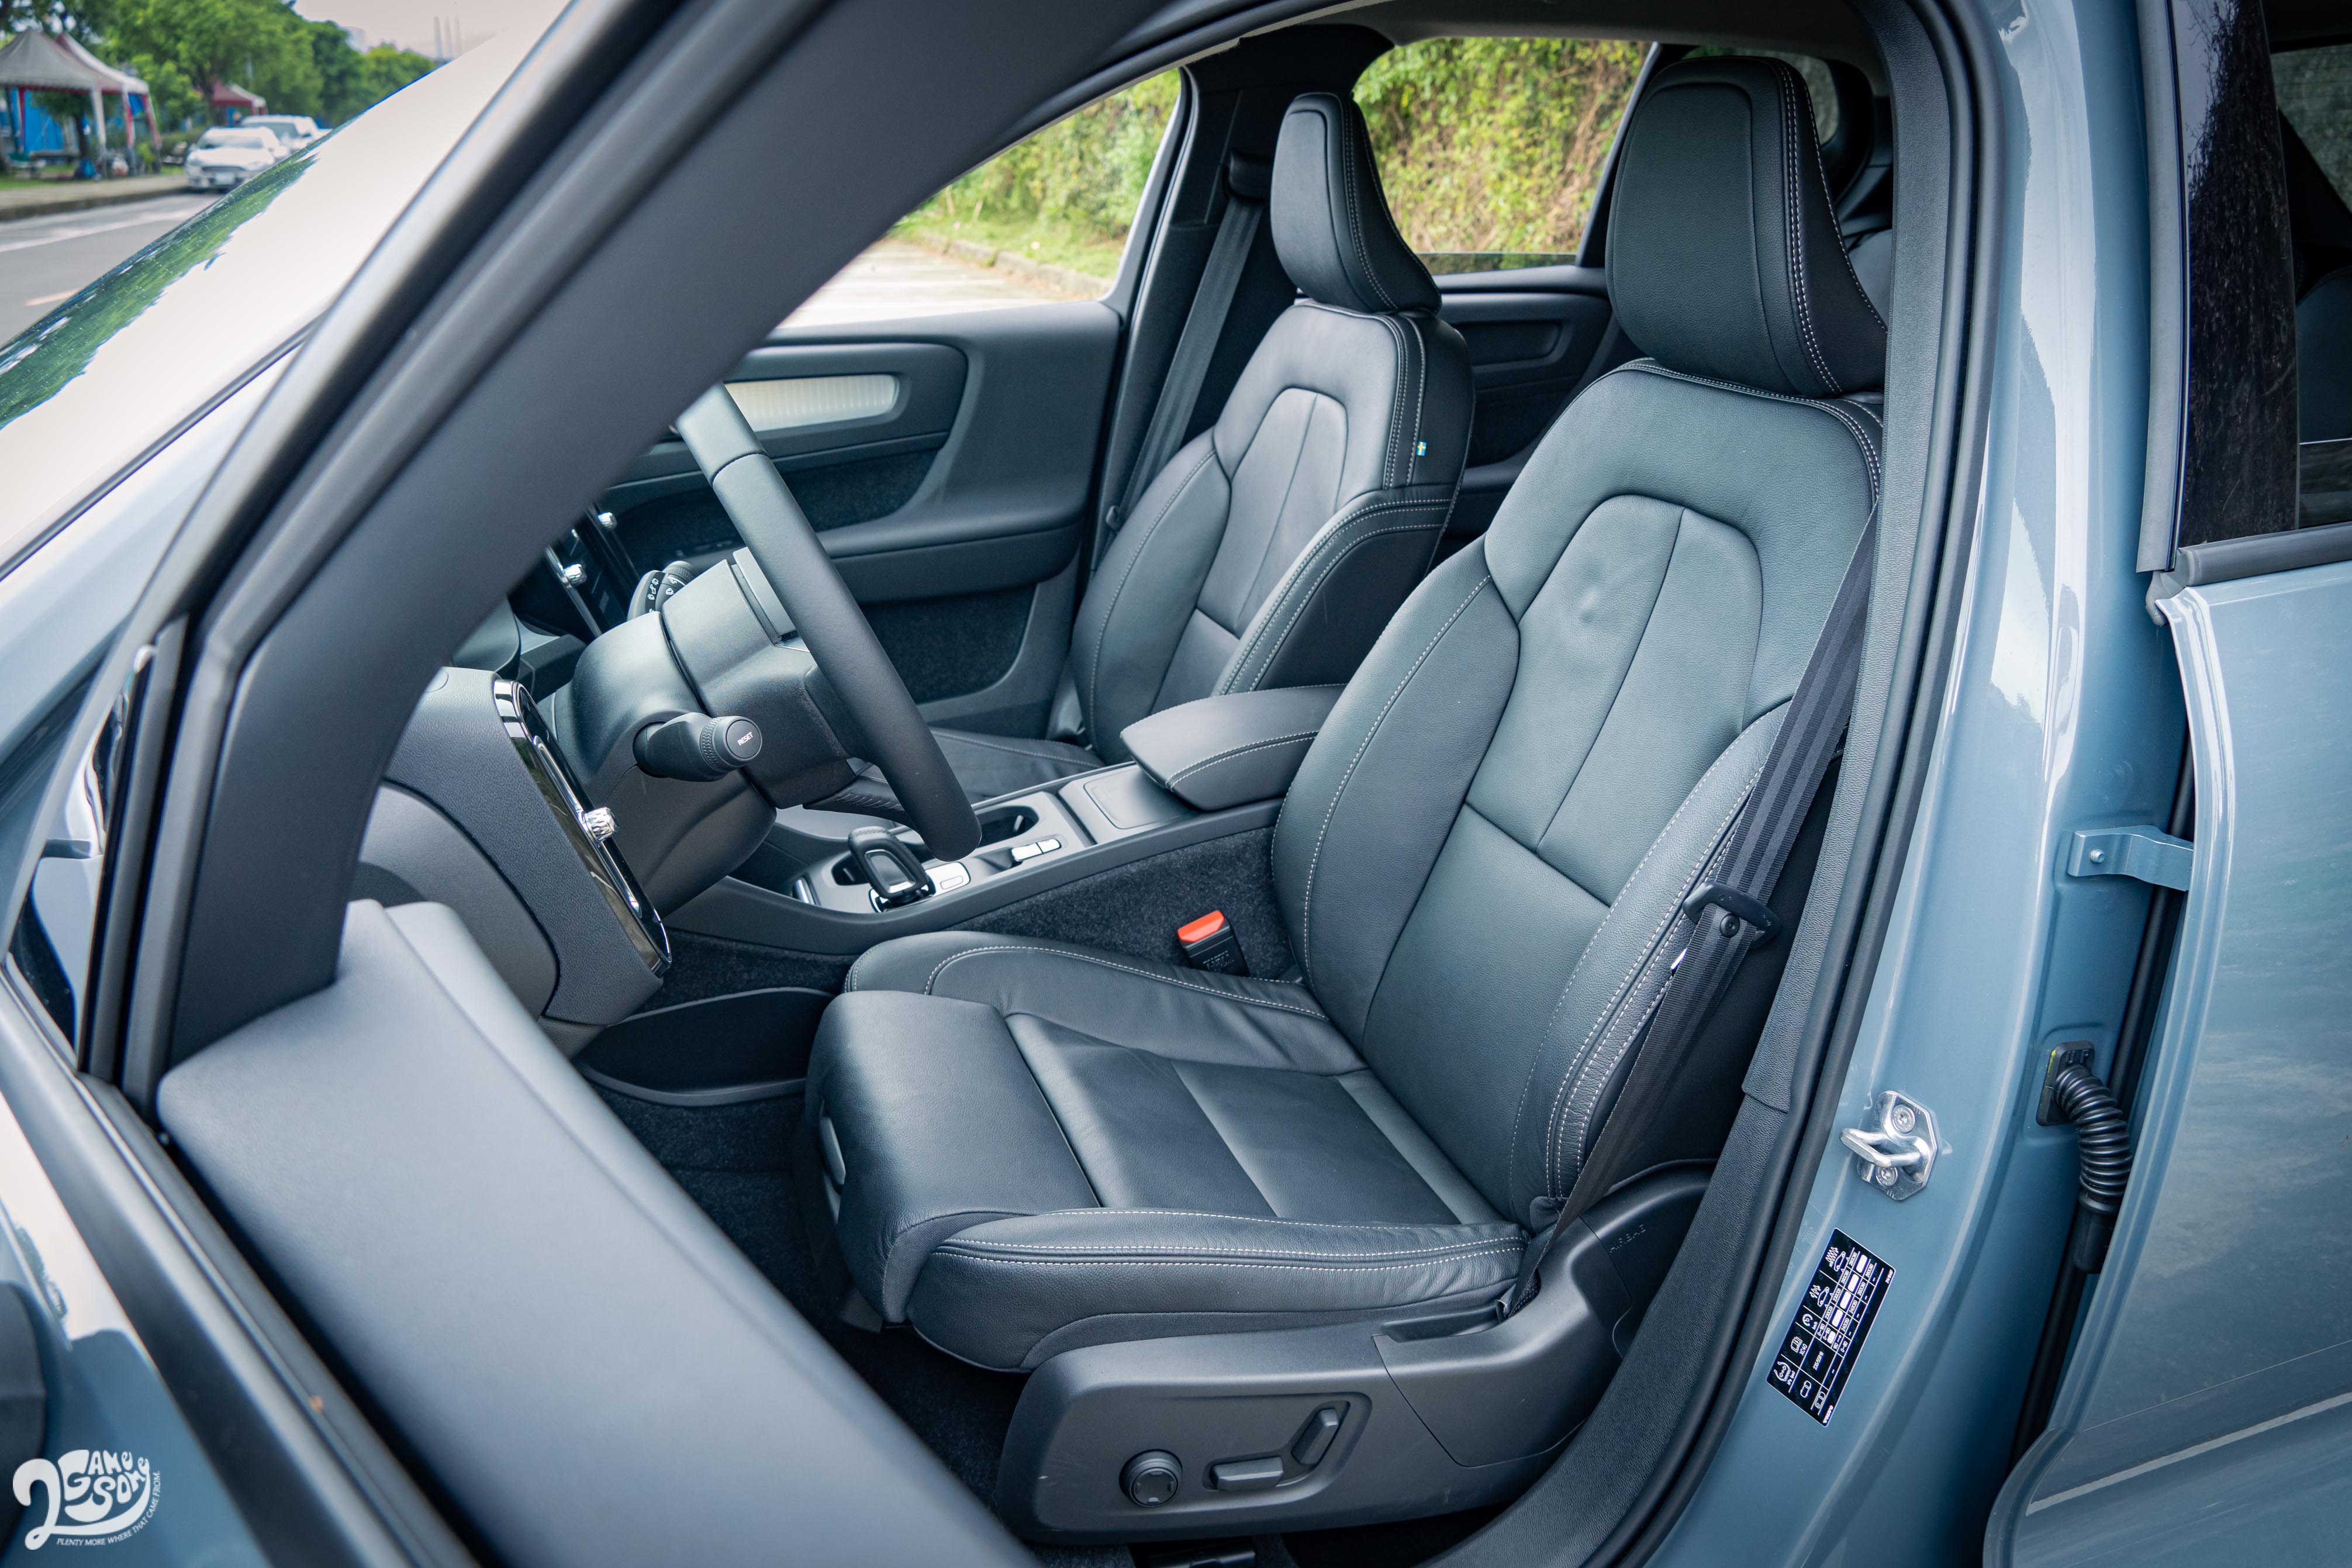 試駕車型選配 Plus Pack，真皮座椅升級雙前座機械腿部延伸支撐以及副駕駛座多向電動調整。